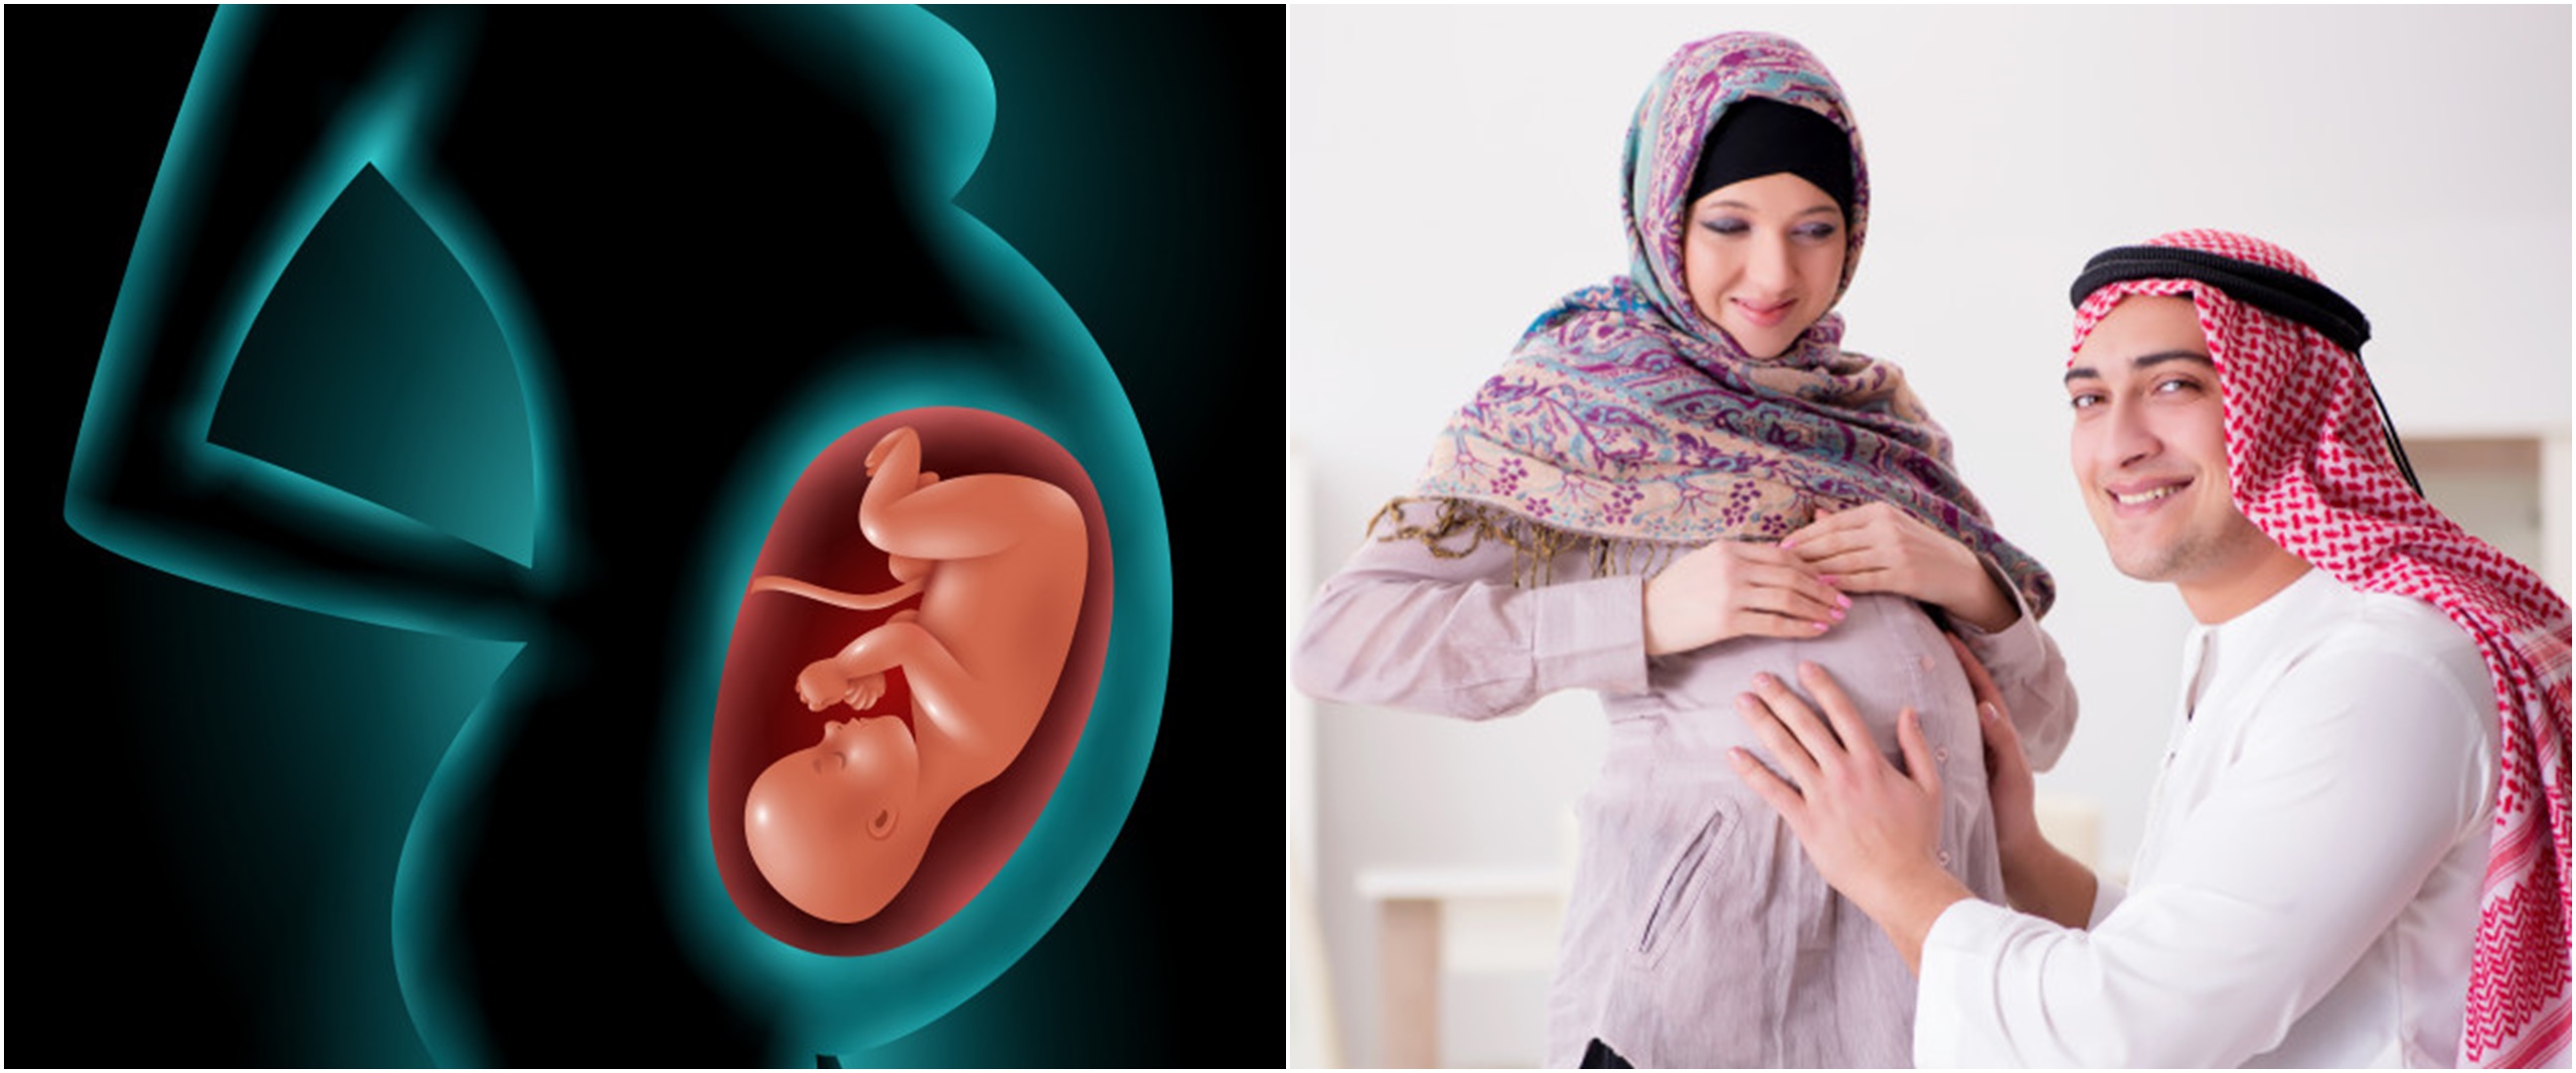 Doa dan amalan agar ibu mudah melahirkan menurut Islam